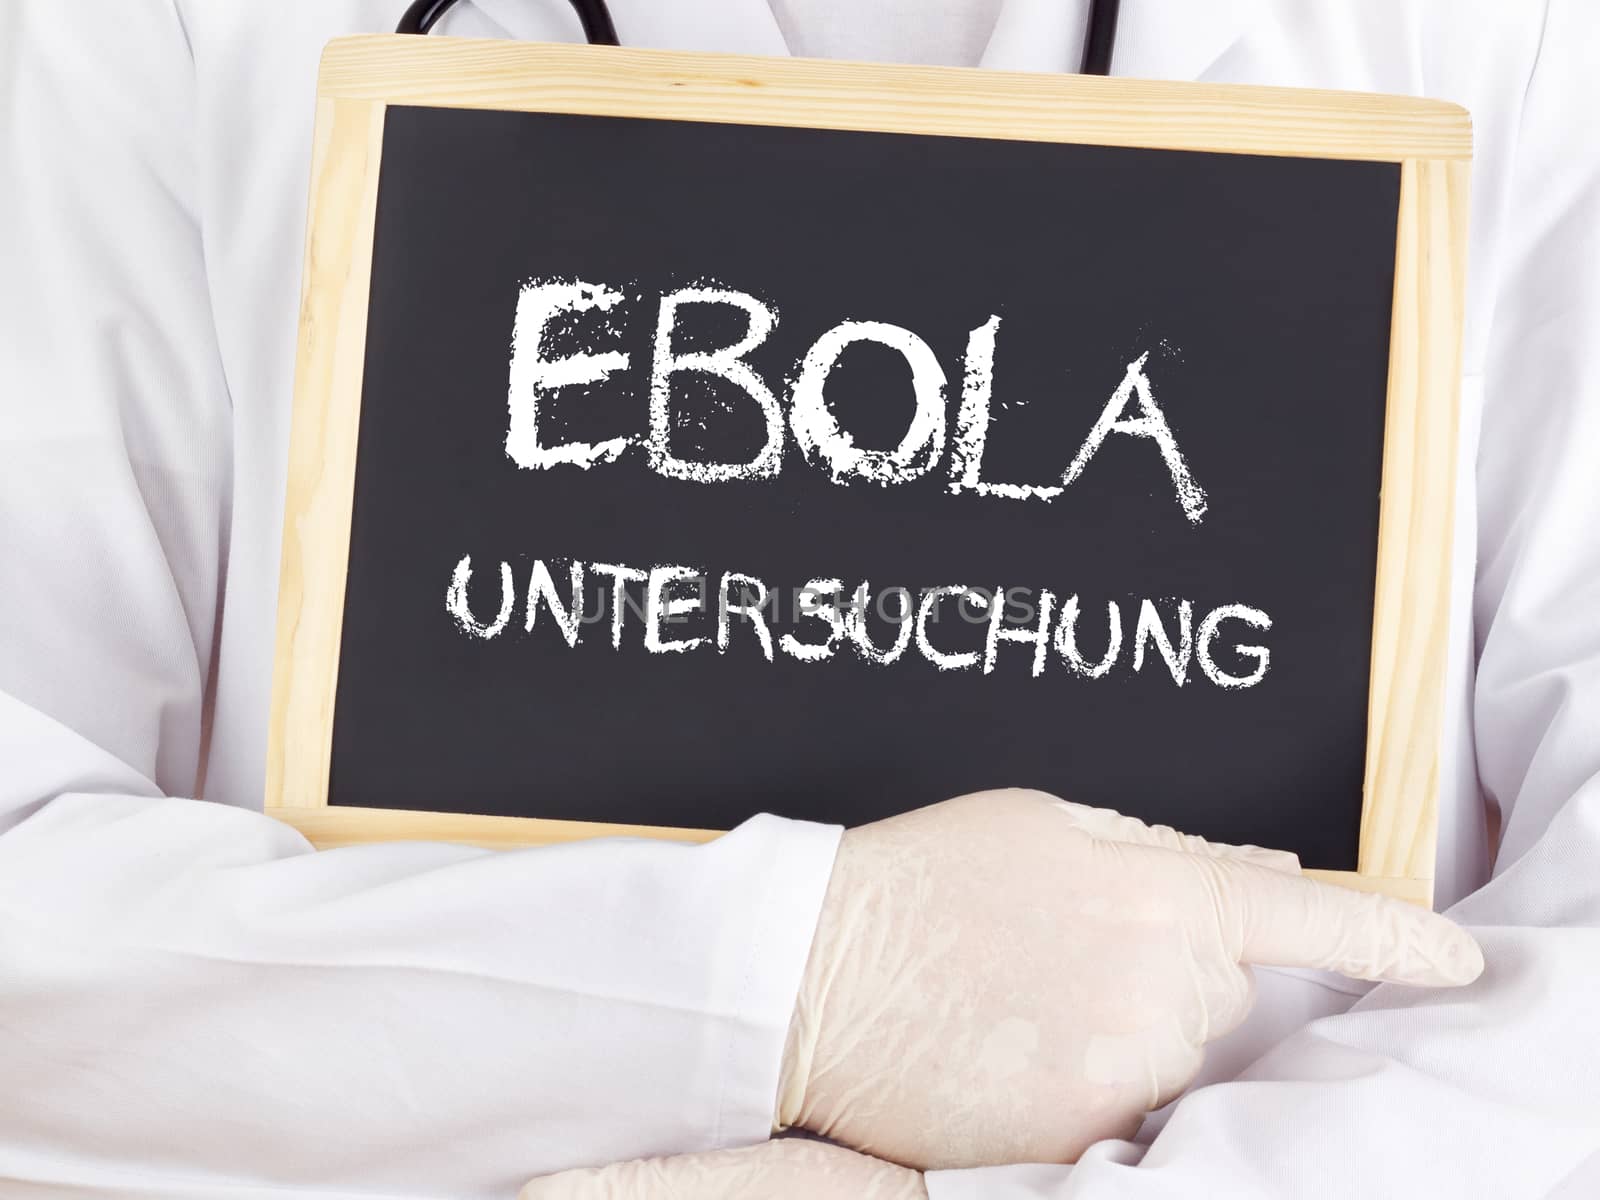 Doctor shows information: Ebola examination in german